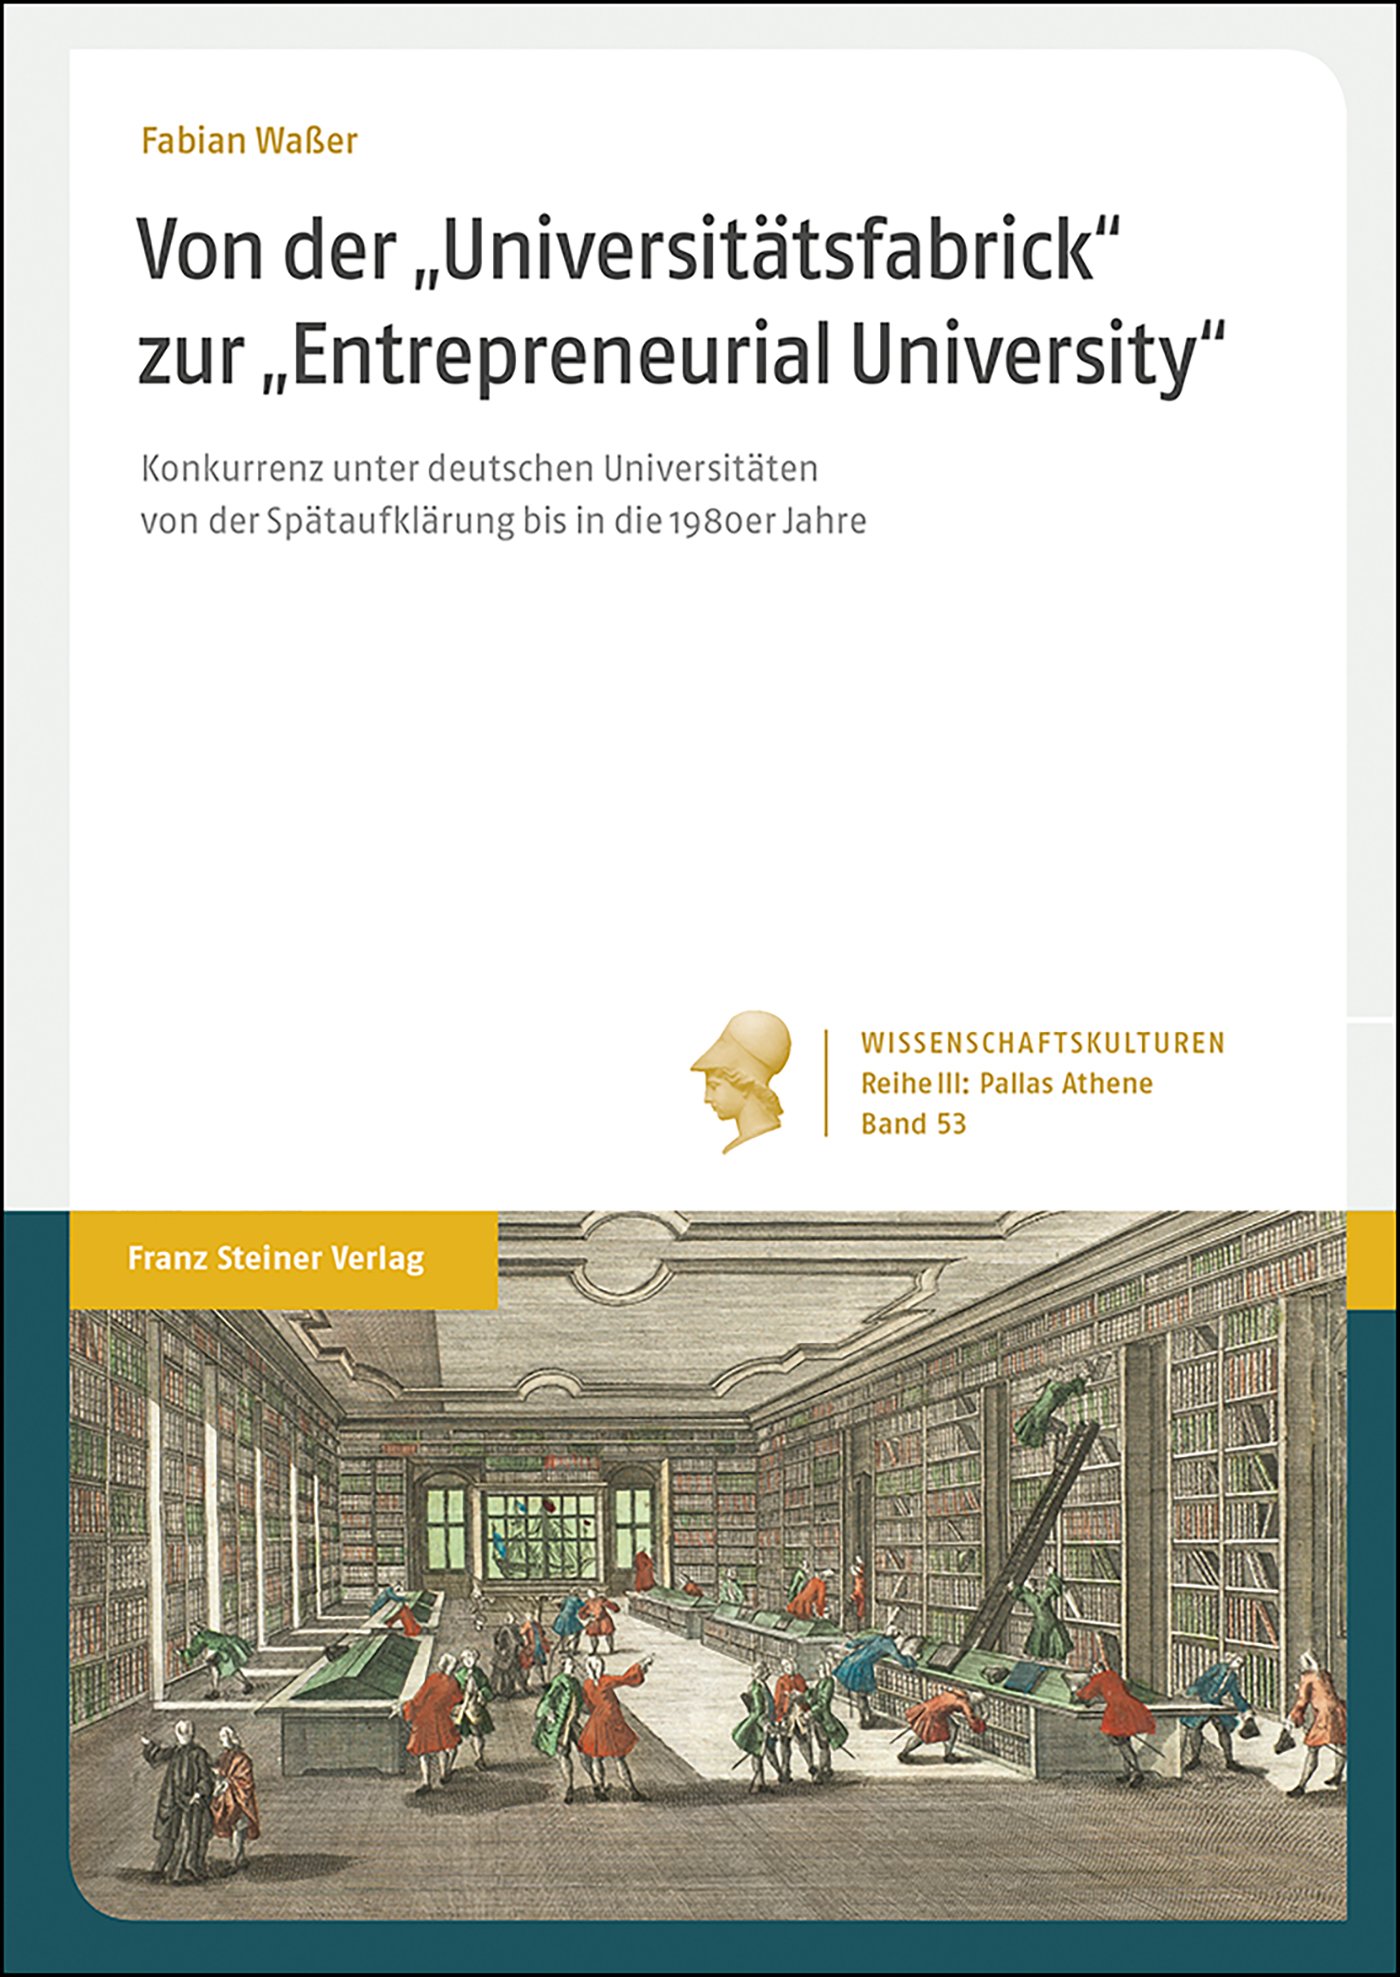 Von der "Universitätsfabrick" zur "Entrepreneurial University"